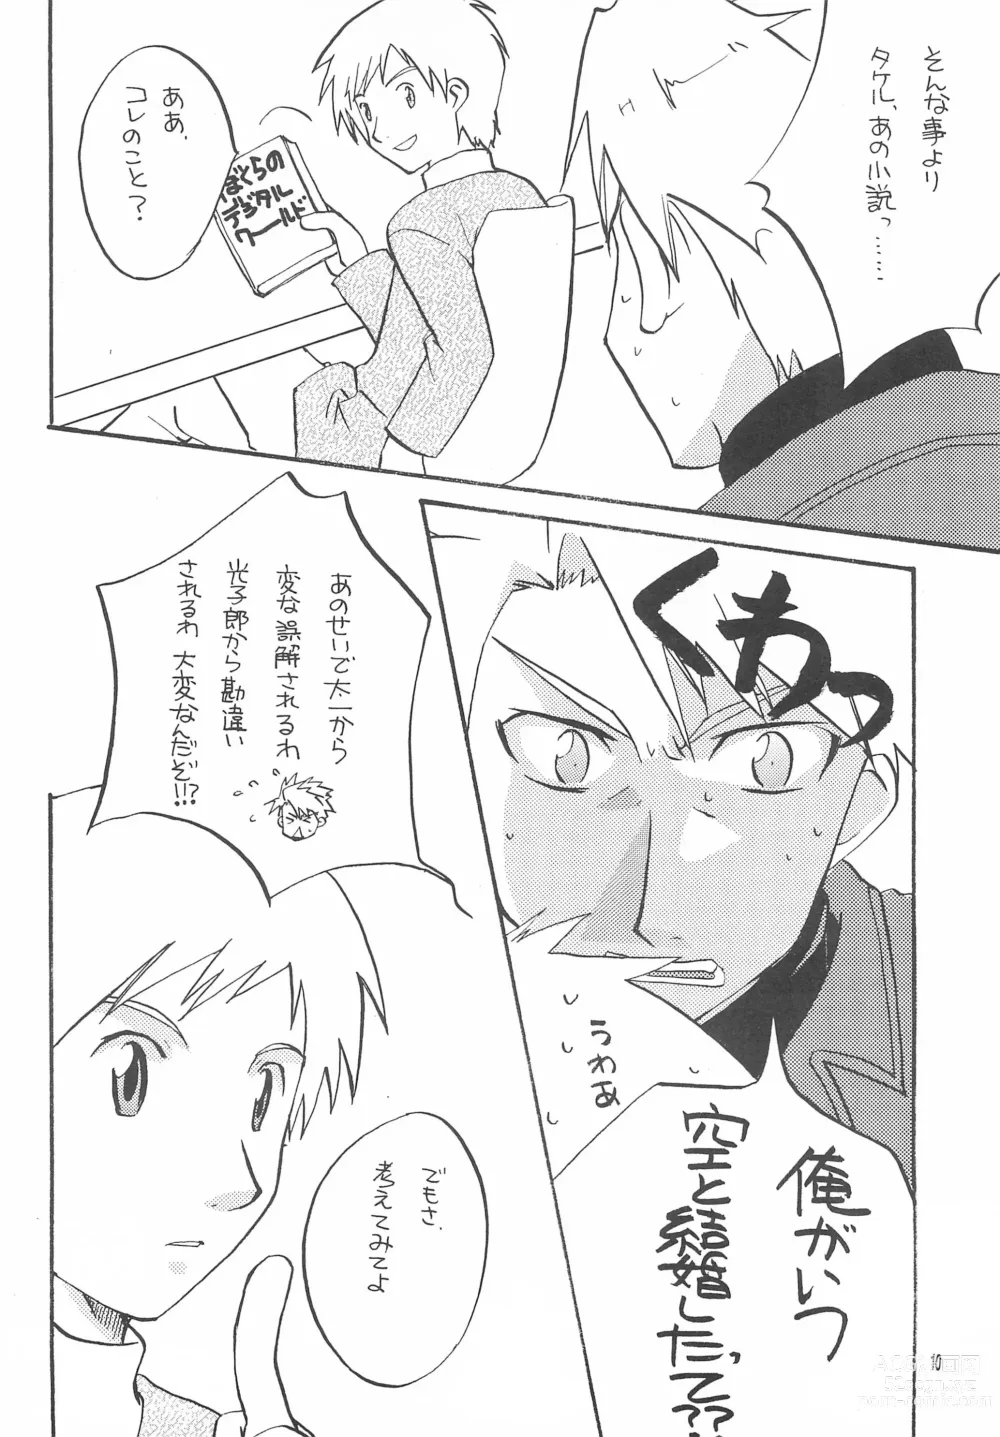 Page 12 of doujinshi Utsukushiki Samazama no Yume